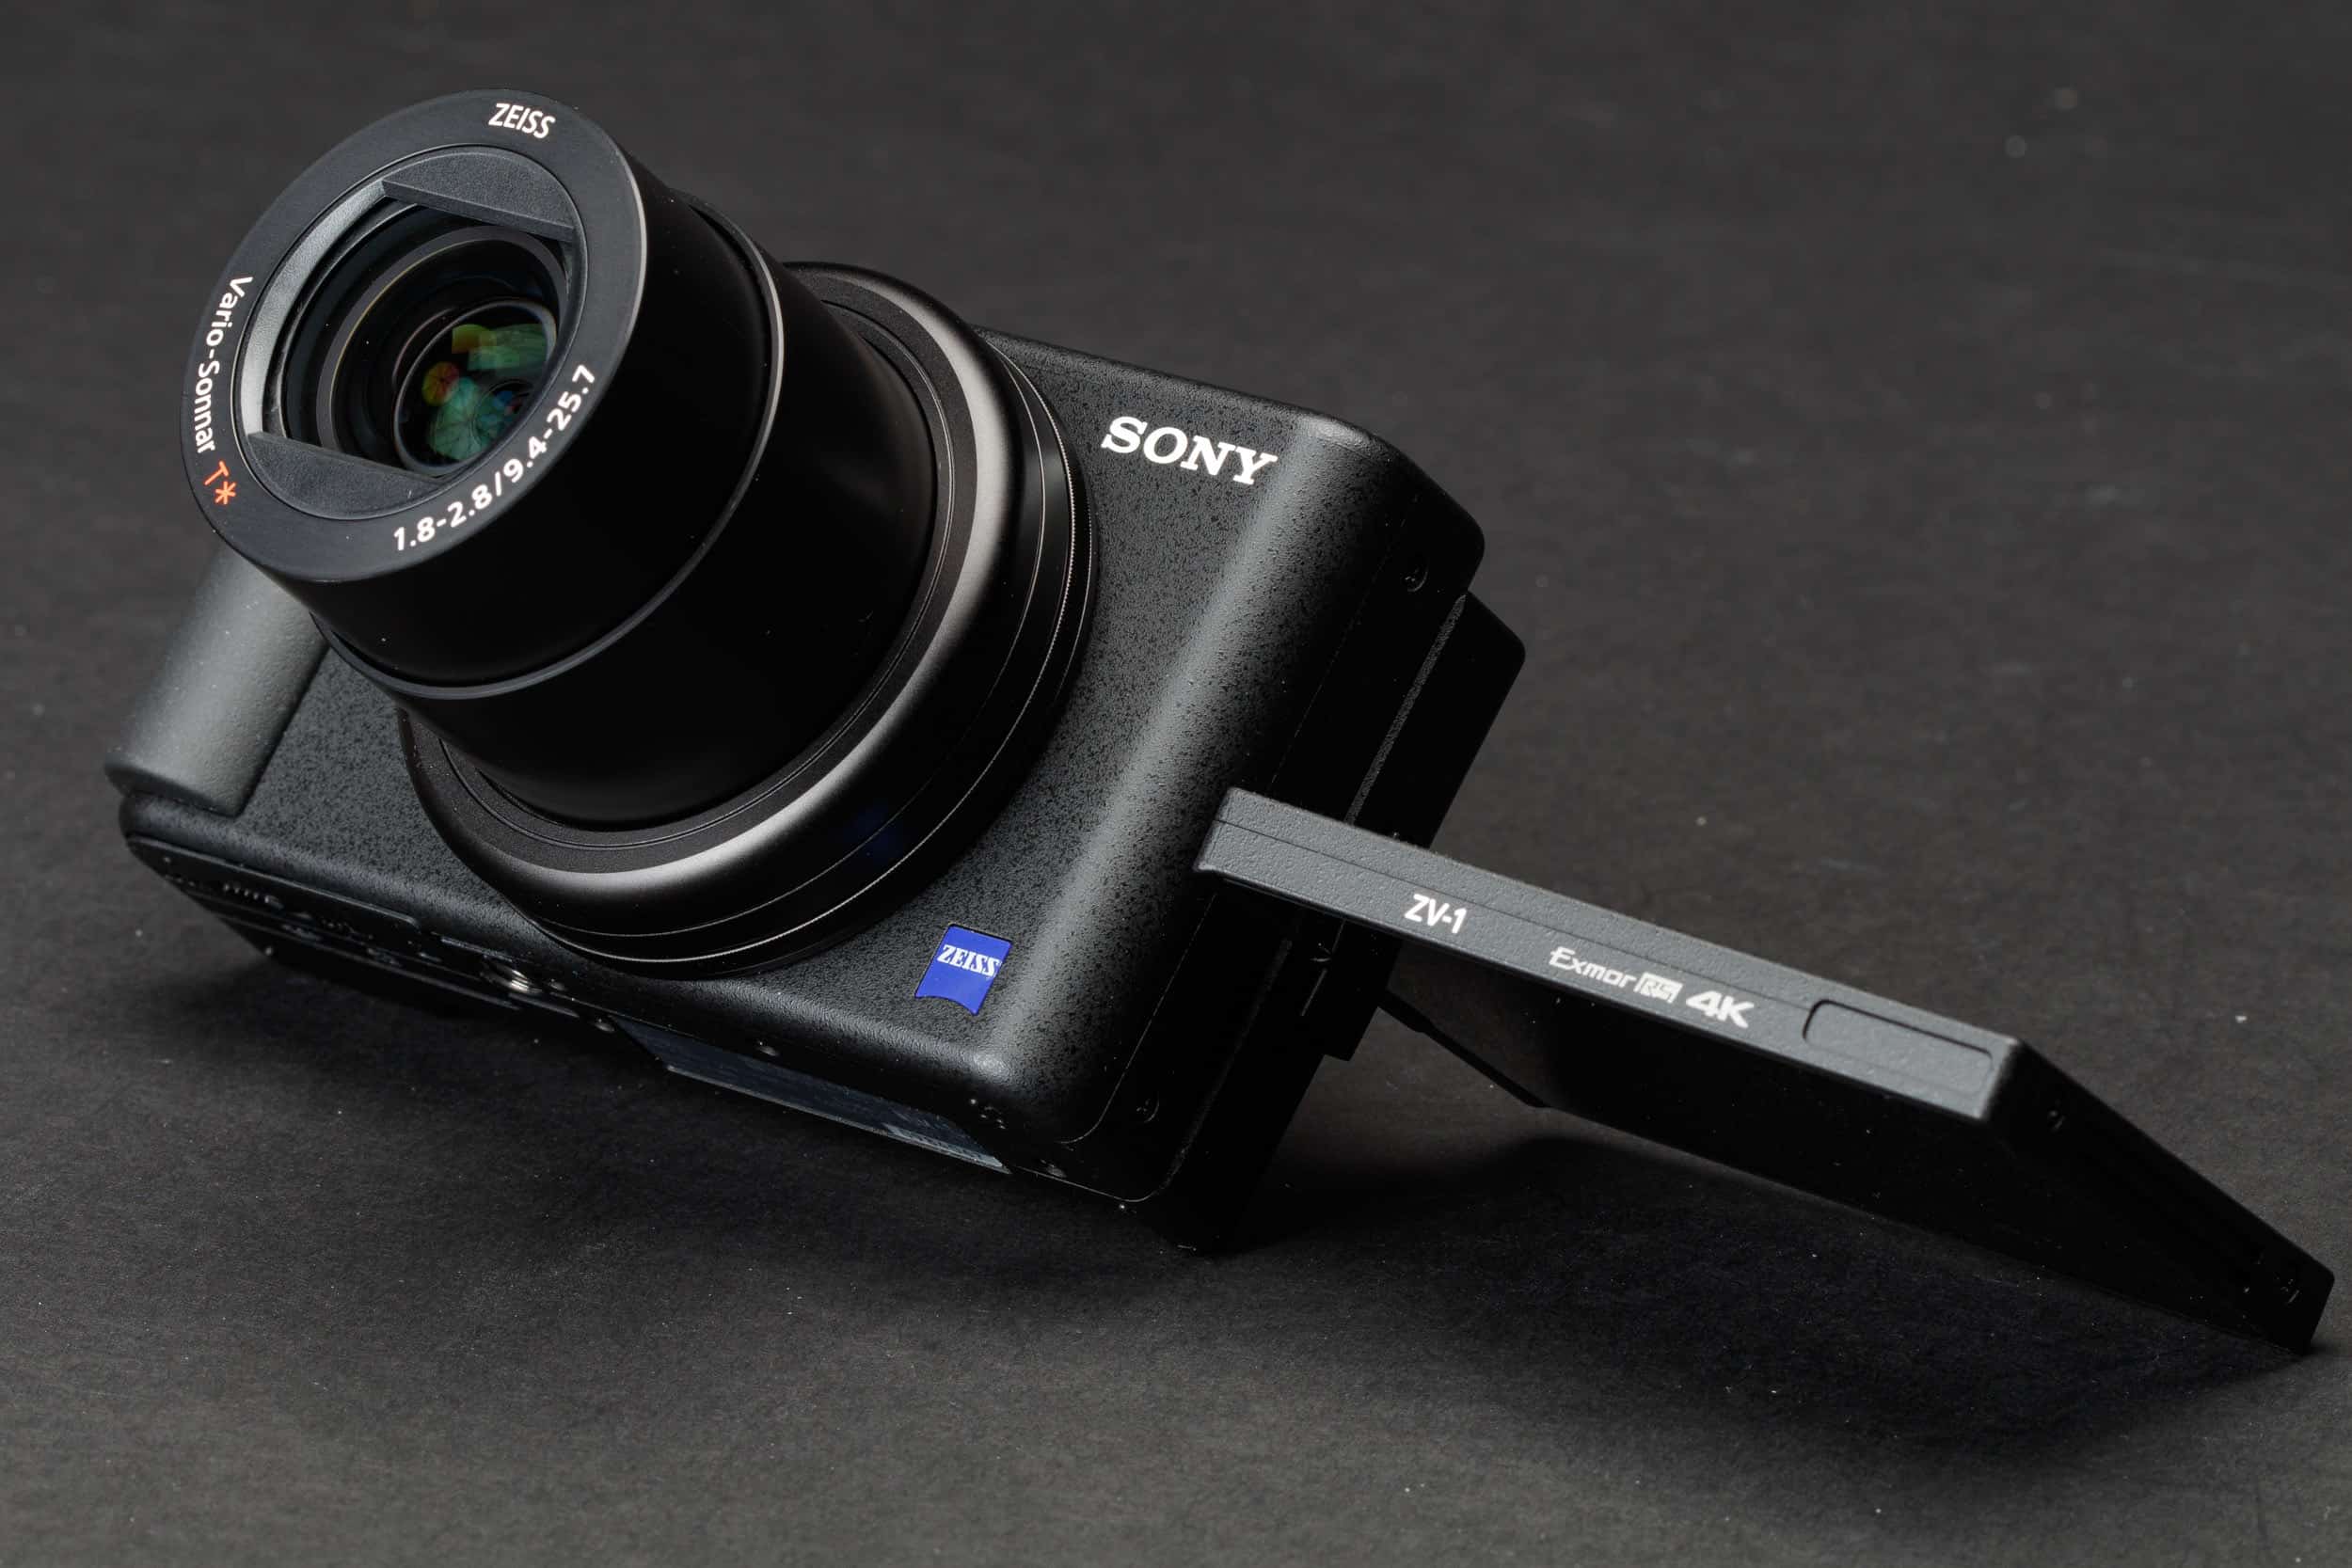 Ưu đãi máy ảnh Sony ZV-1, chỉ còn 16.990.000đ và tặng kèm quà tặng hấp dẫn